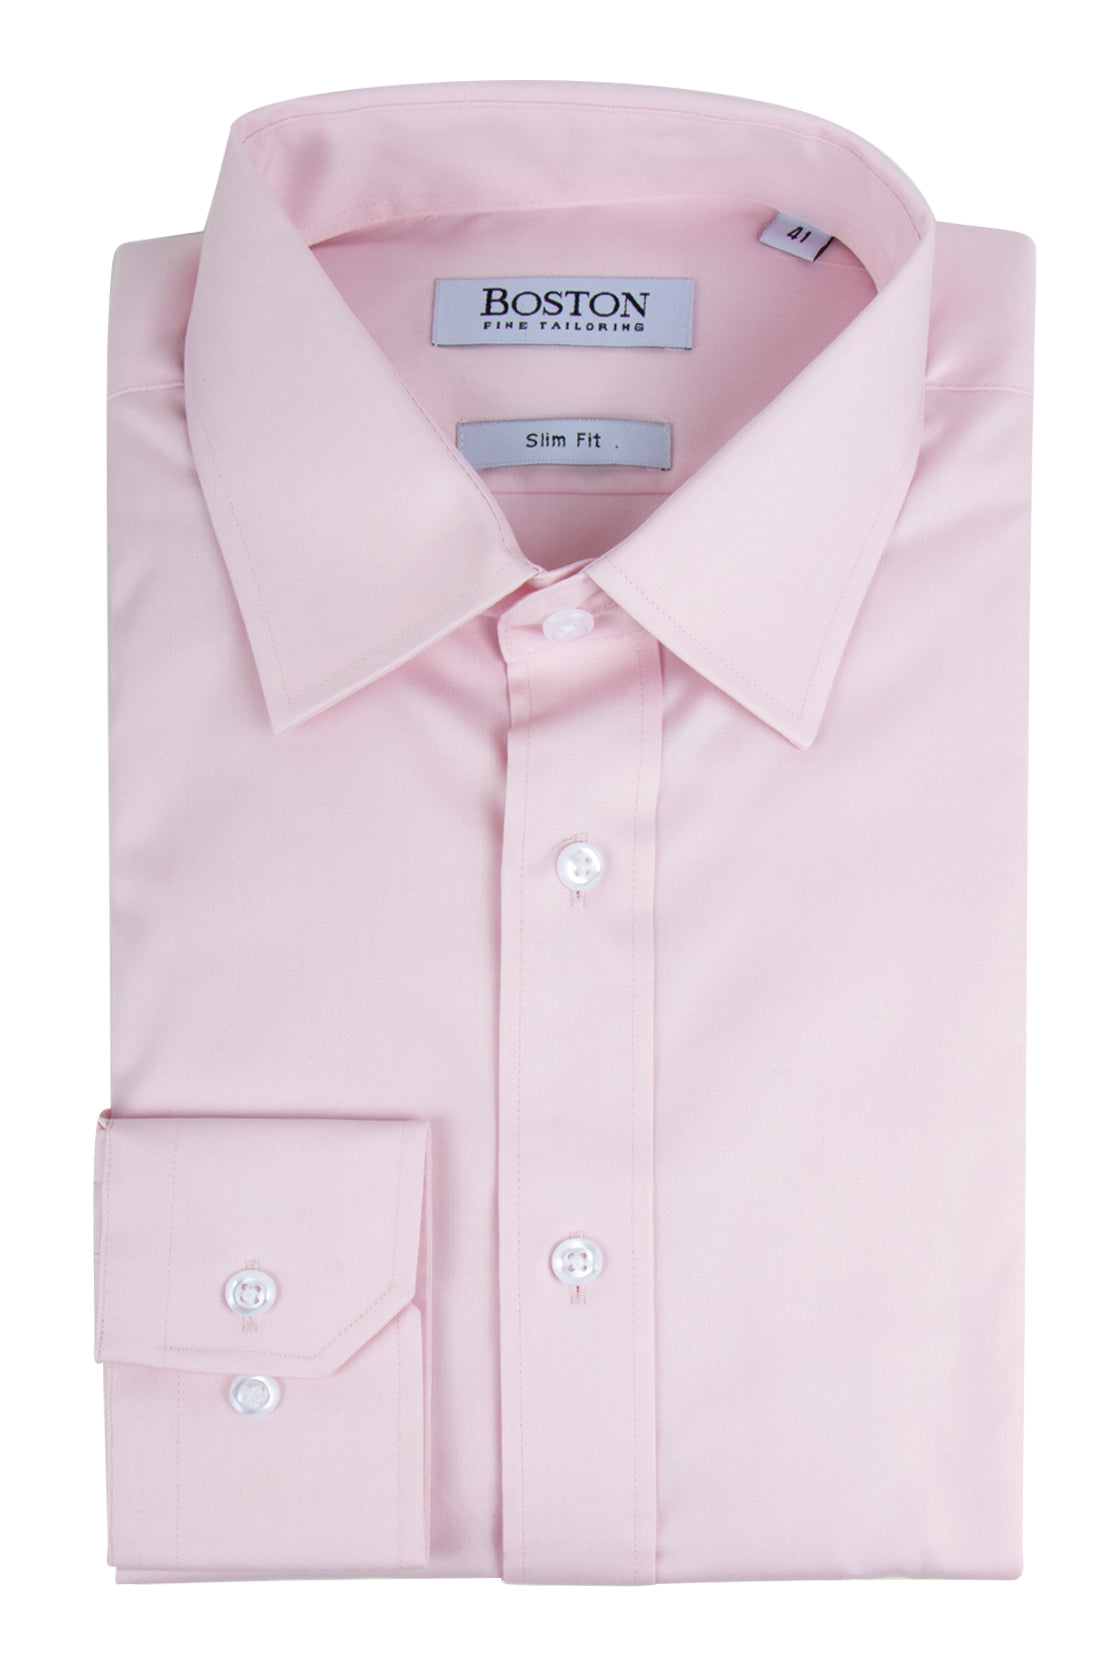 Boston Liberty Business Shirt Pink